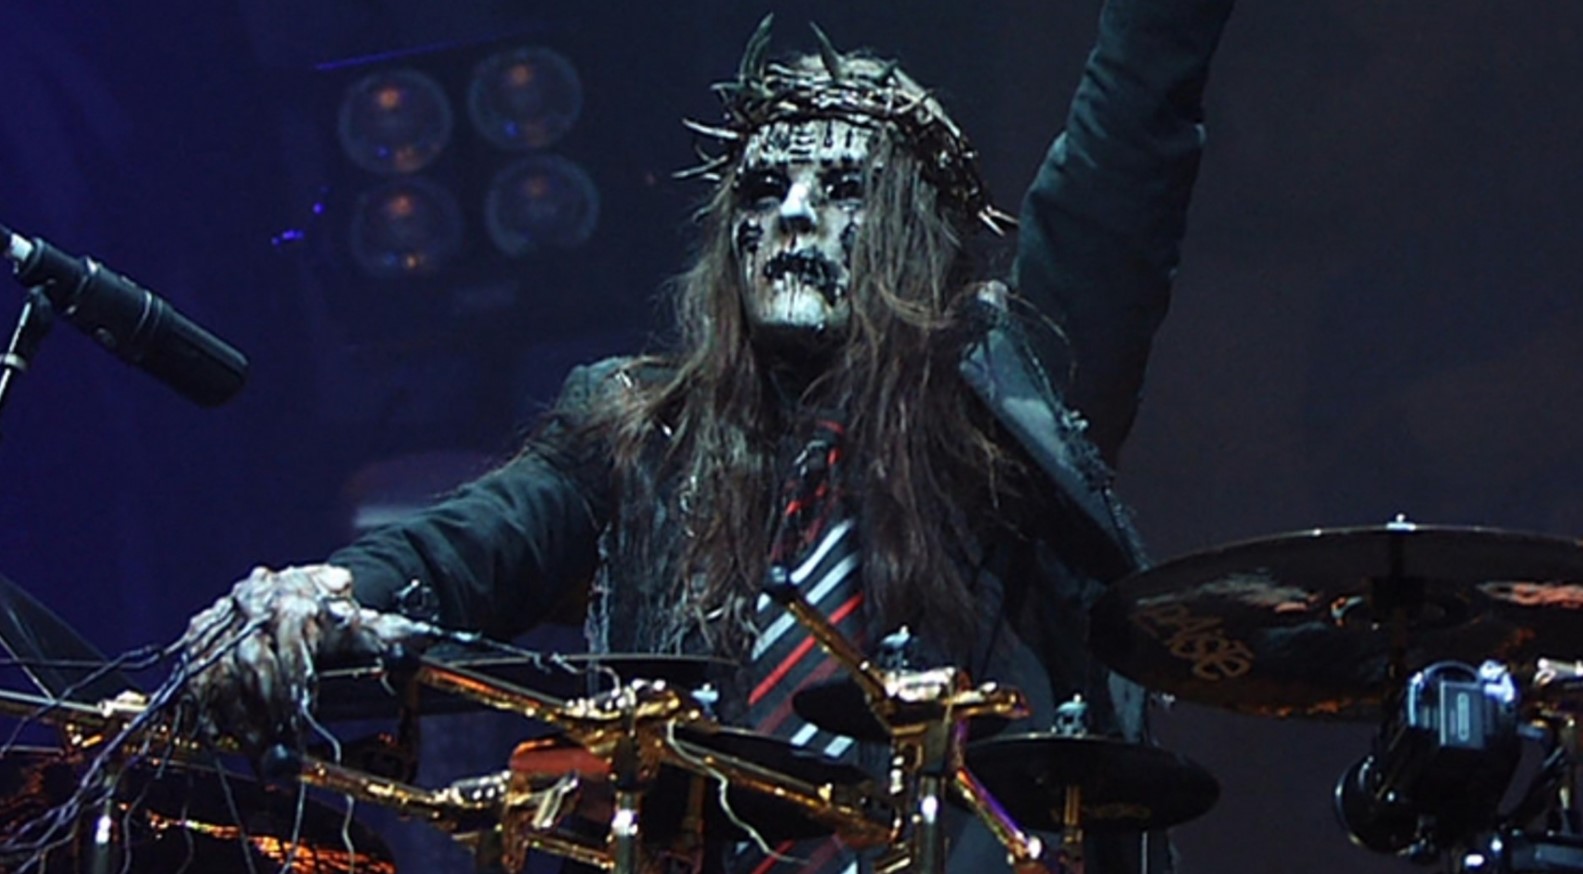 Один из основателей группы Slipknot Джордисон умер во сне